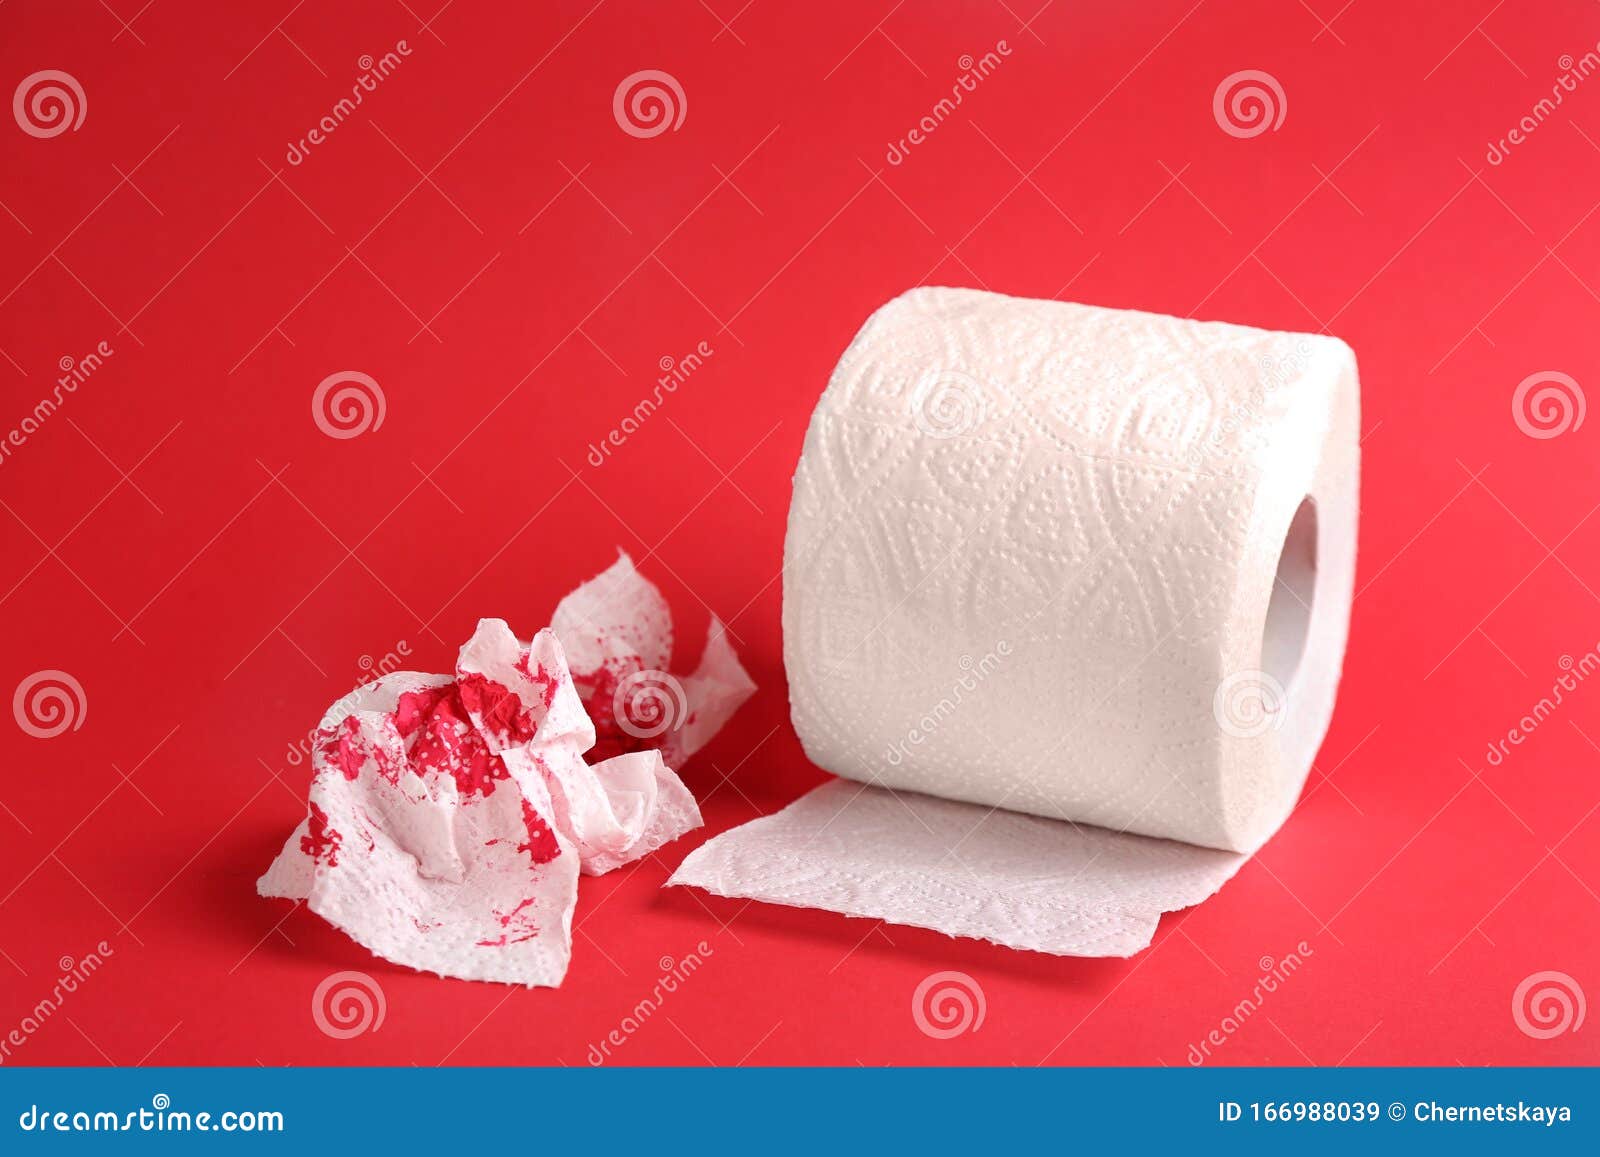 Кровь на туалетной бумаге. Туалетная бумага Кровавая. Розовая кровь на туалетной бумаге. Геморрой от туалетной бумаги. После стула крови на туалетной бумаге